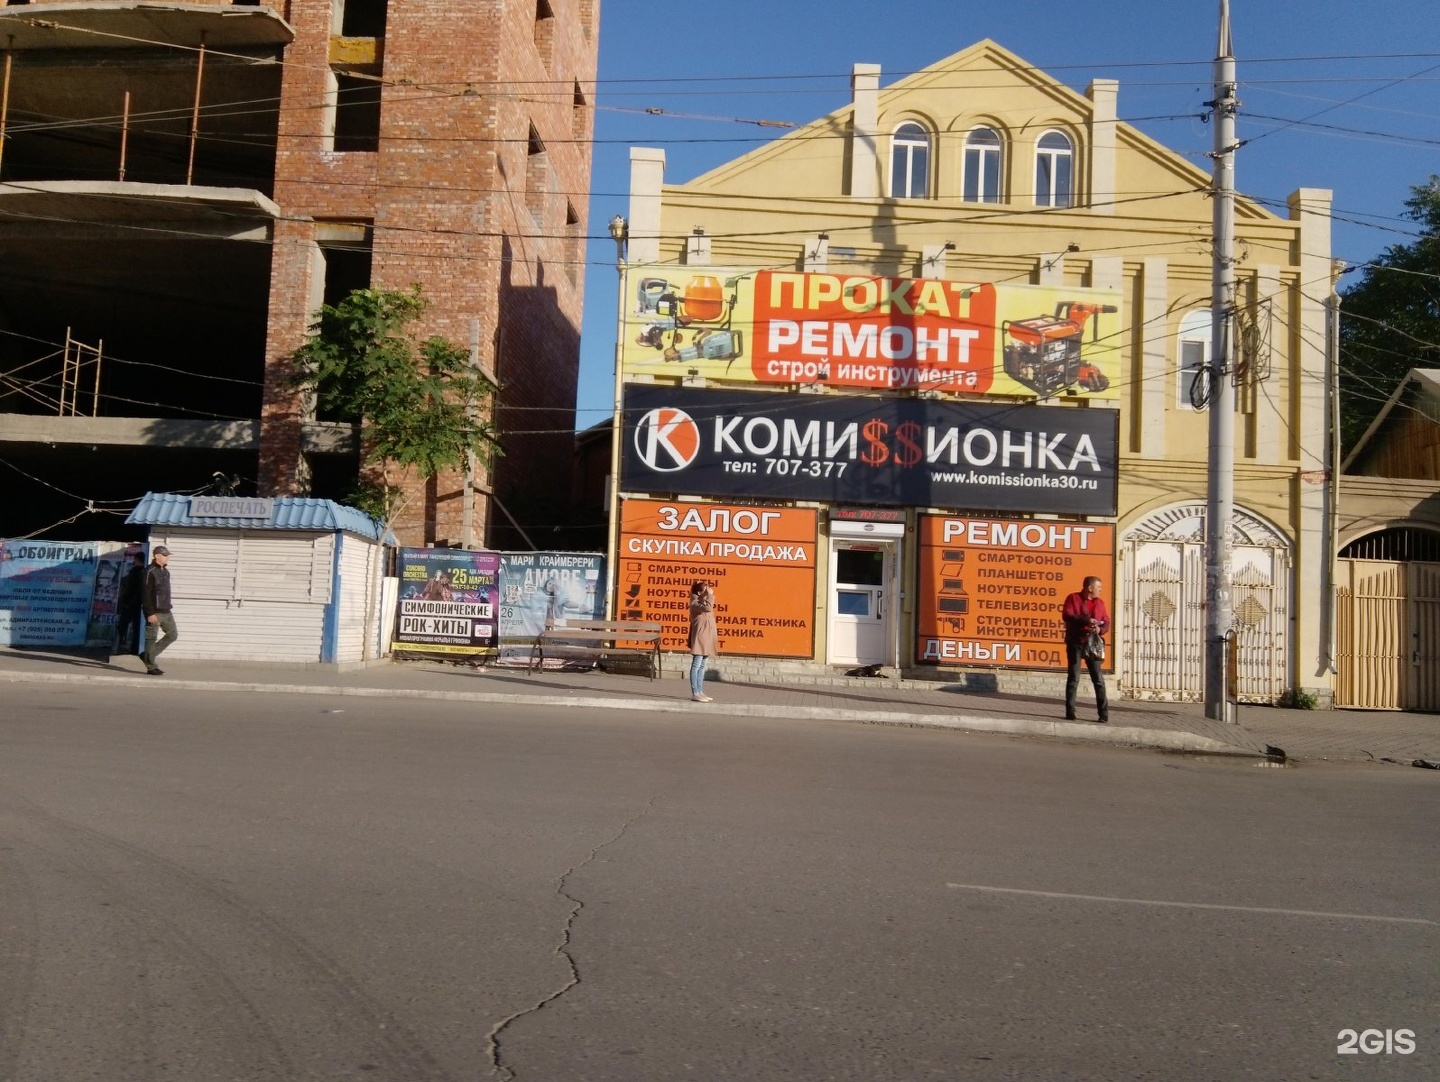 Ремонт электроинструмента в Астрахани – адреса, телефоны, отзывы, цены и график работы организаций